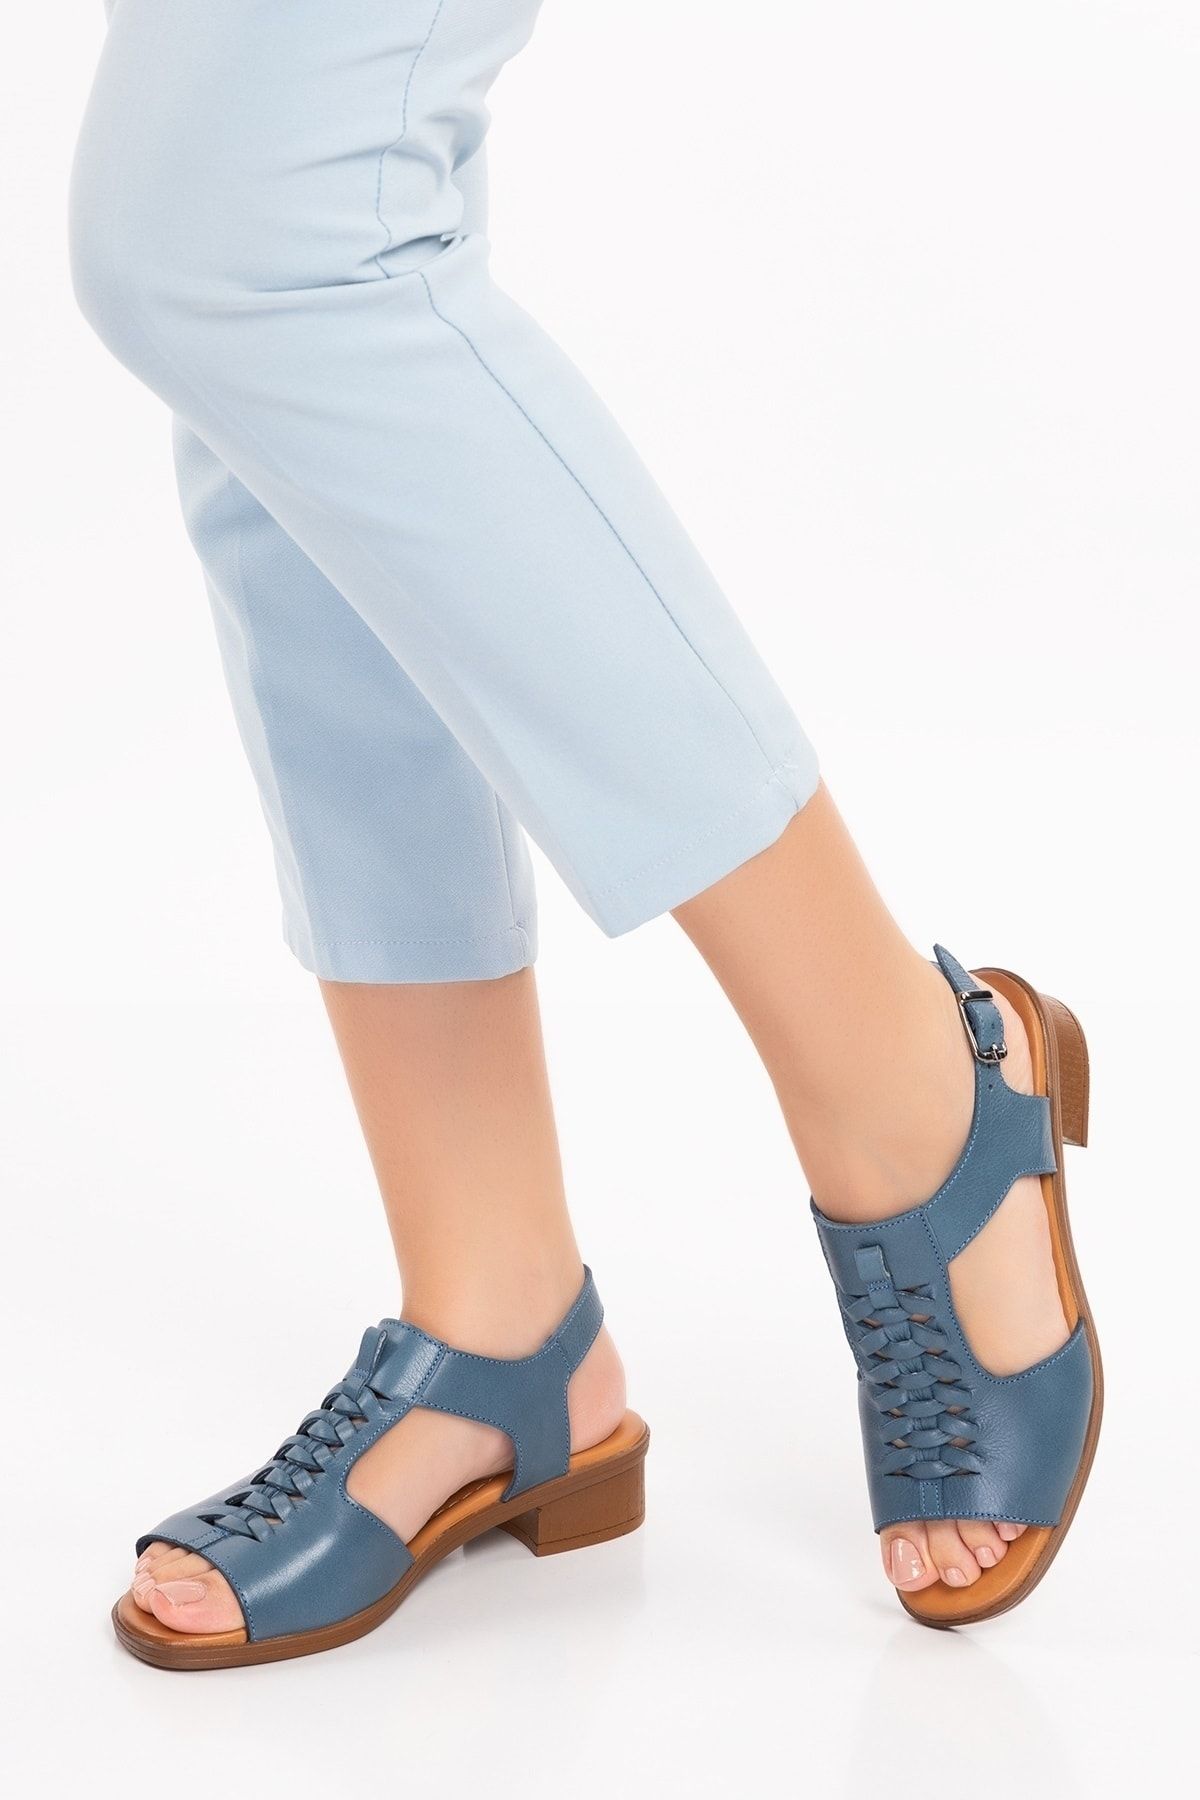 Gondol Hakiki Deri Örgü Topuklu Sandalet İz.6026 - Mavi - 37